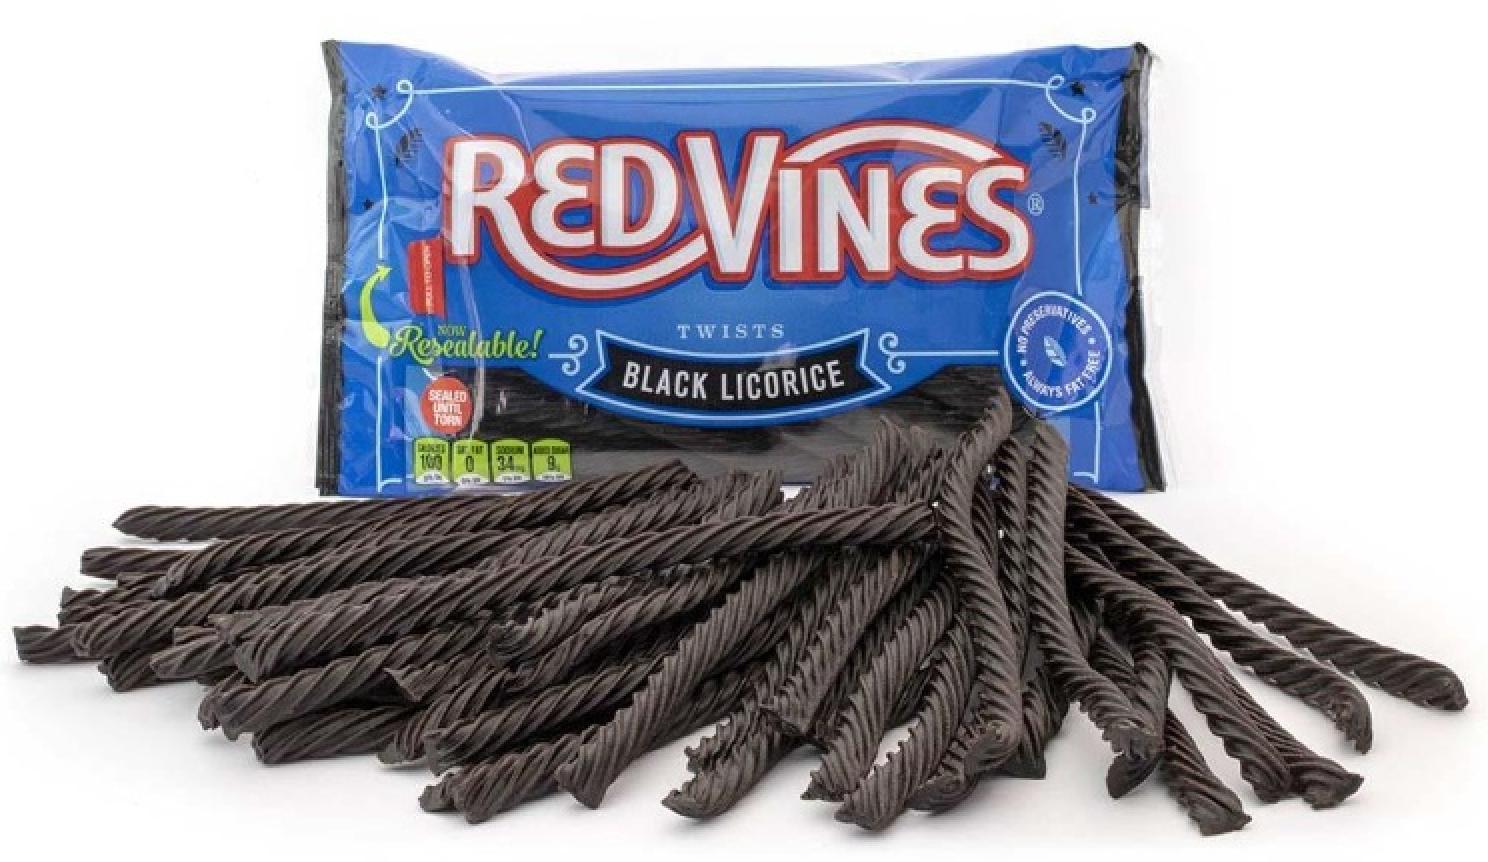 Red Vines Black Licorice Twists 16 oz